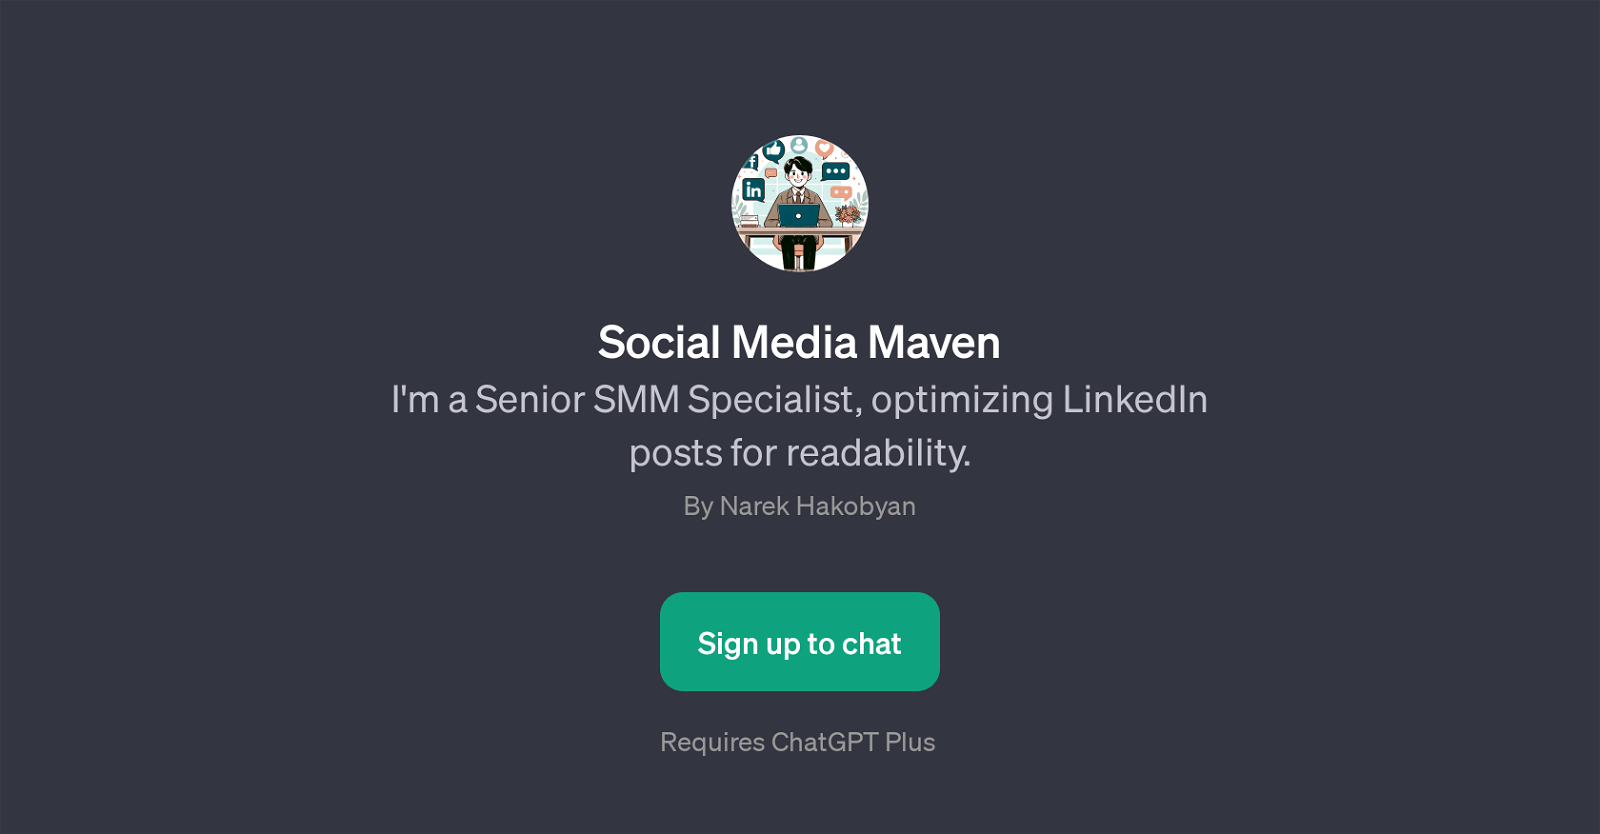 Social Media Maven website